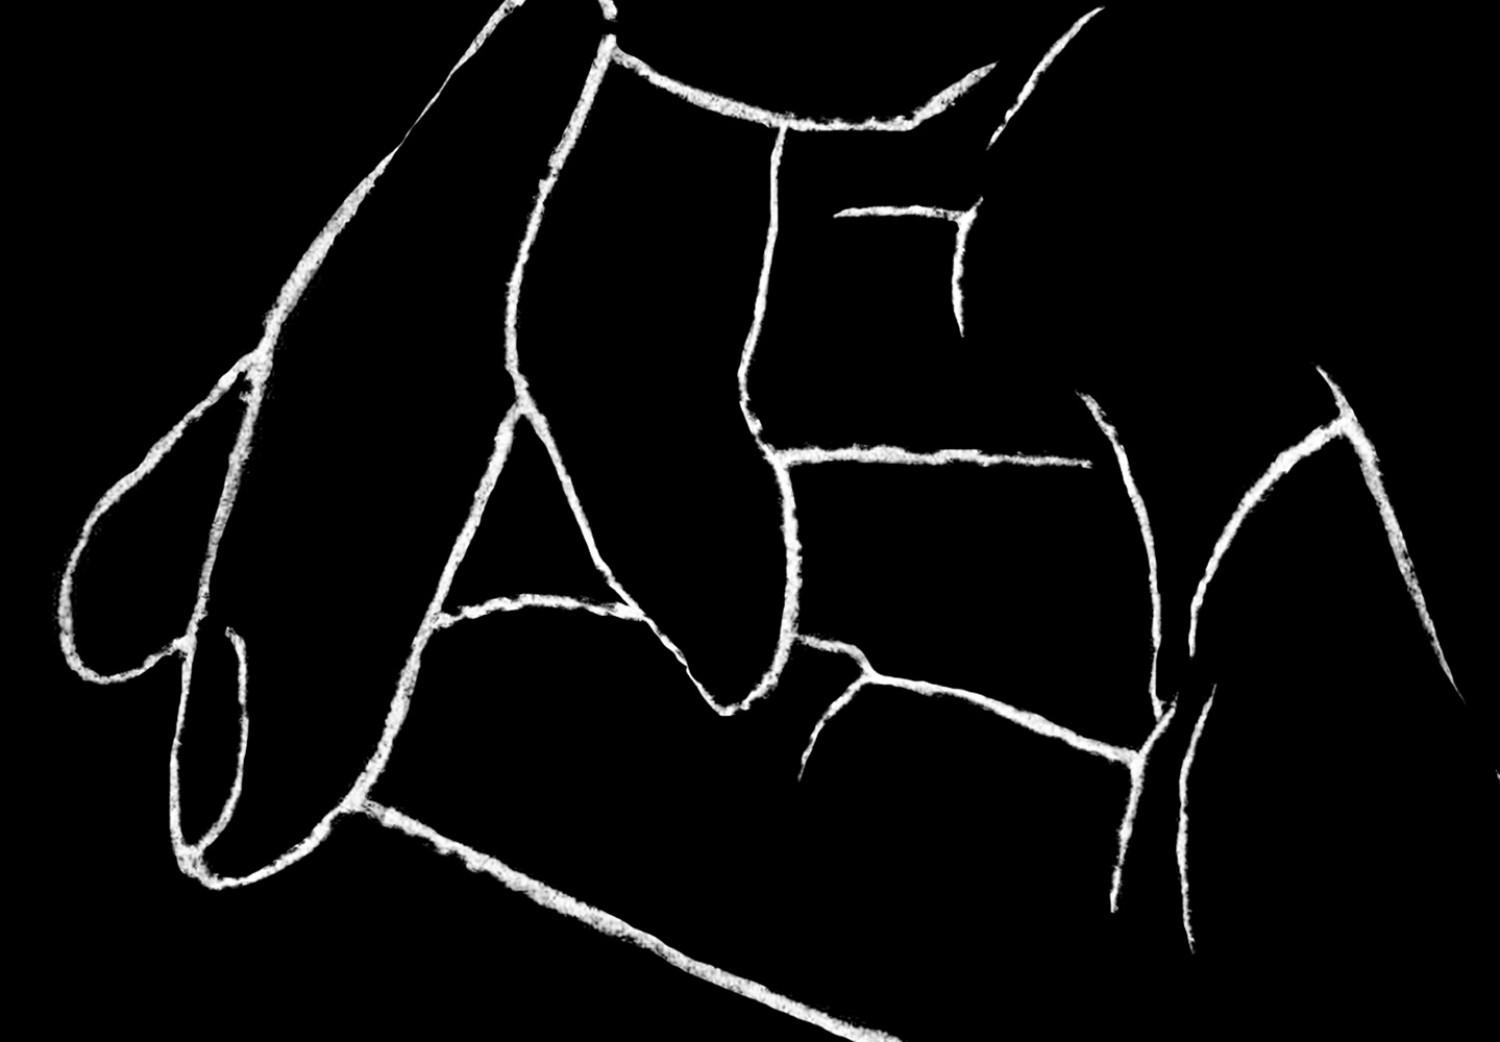 Cuadro Toque al estilo lineart (1 parte) - manos en blanco y negro